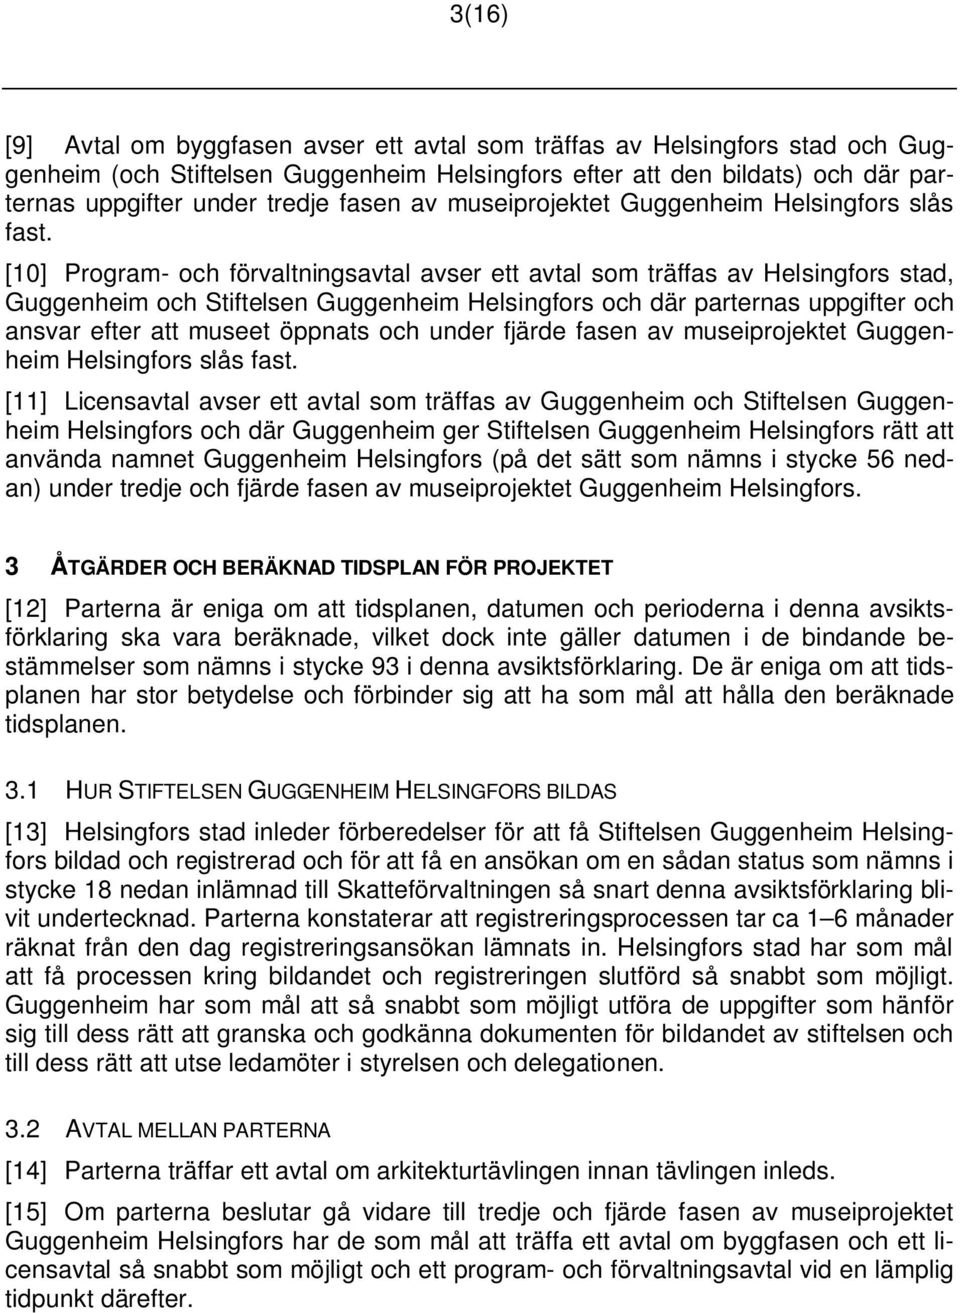 [10] Program- och förvaltningsavtal avser ett avtal som träffas av Helsingfors stad, Guggenheim och Stiftelsen Guggenheim Helsingfors och där parternas uppgifter och ansvar efter att museet öppnats